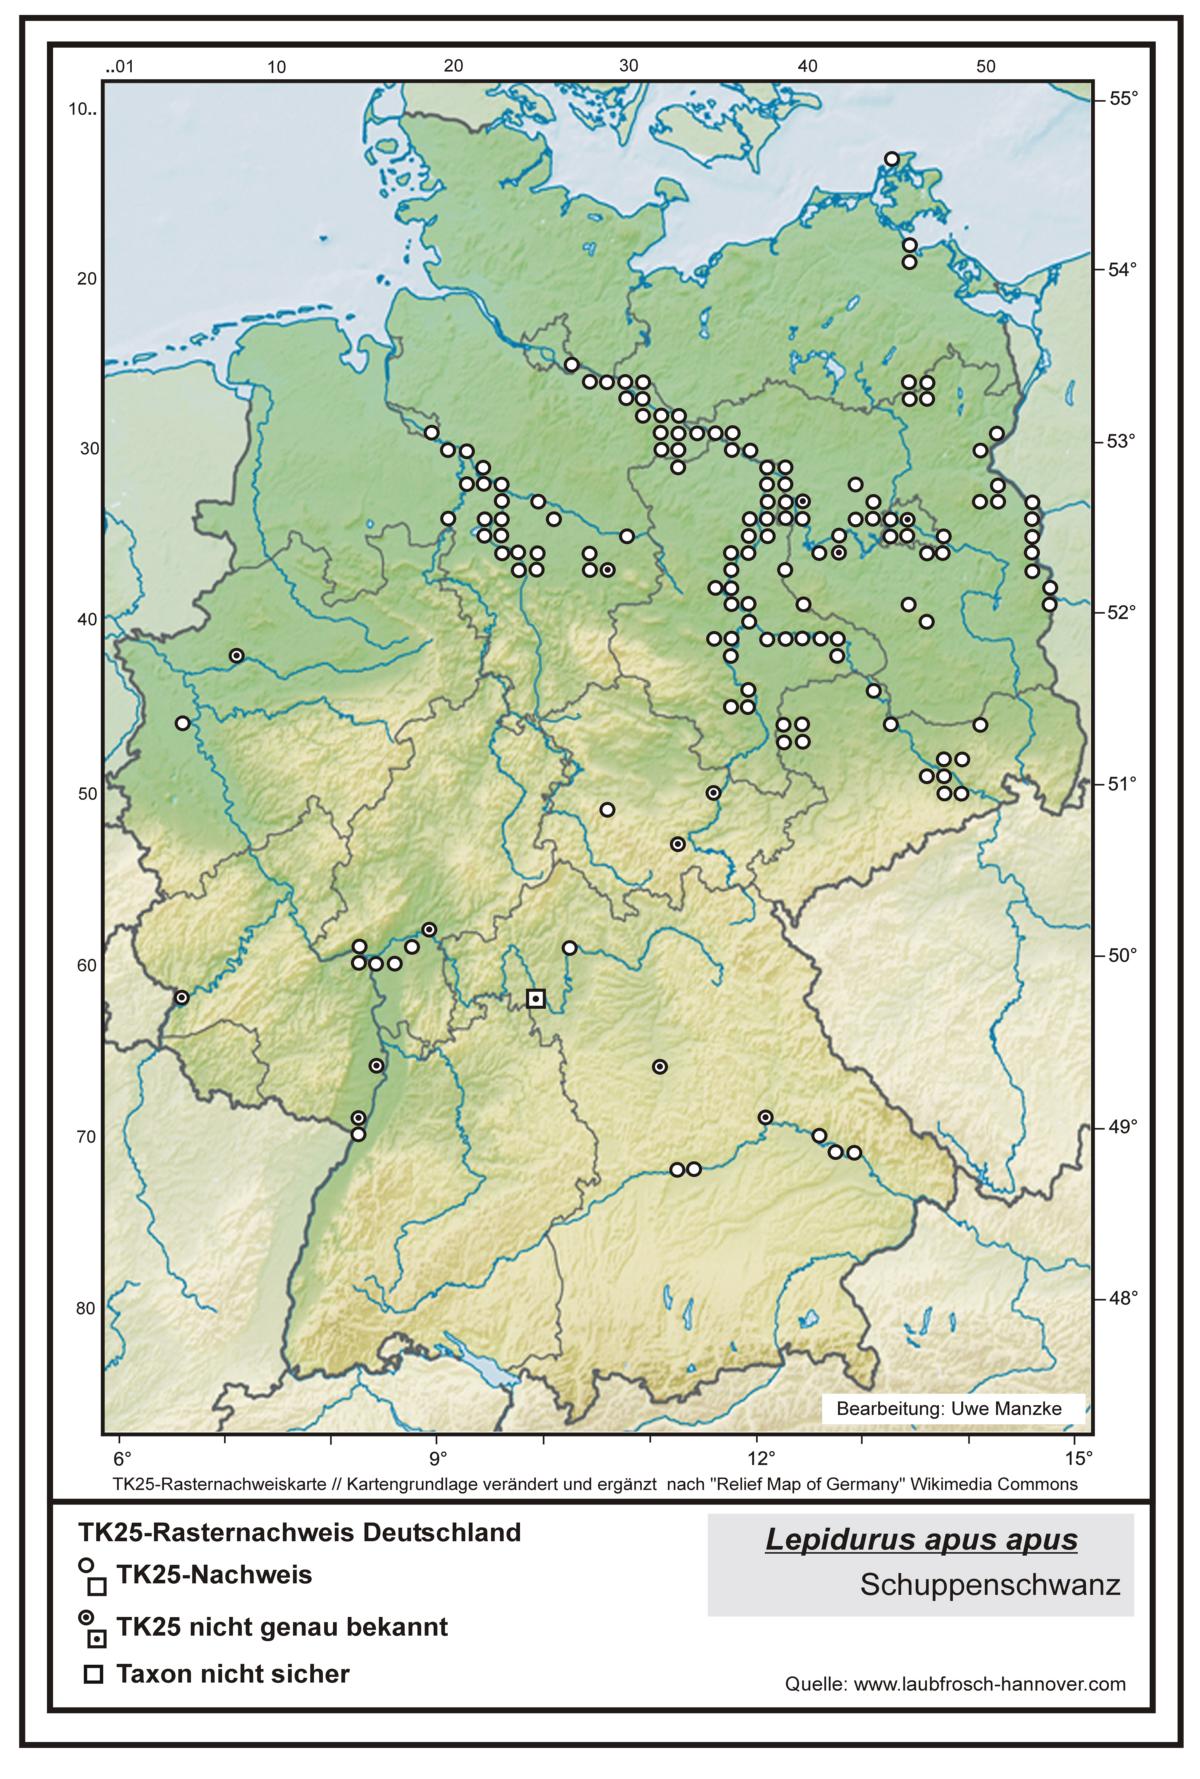 Lepidurus a. apus  TK25-Rasternachweiskarte Deutschland, Bearbeitung Uwe Manzke; Kartengrundlage: verändert n. Relief Map of Germany Wikimedia Commons https://commons.wikimedia.org/wiki/File:Relief_Map_of_Germany.svg